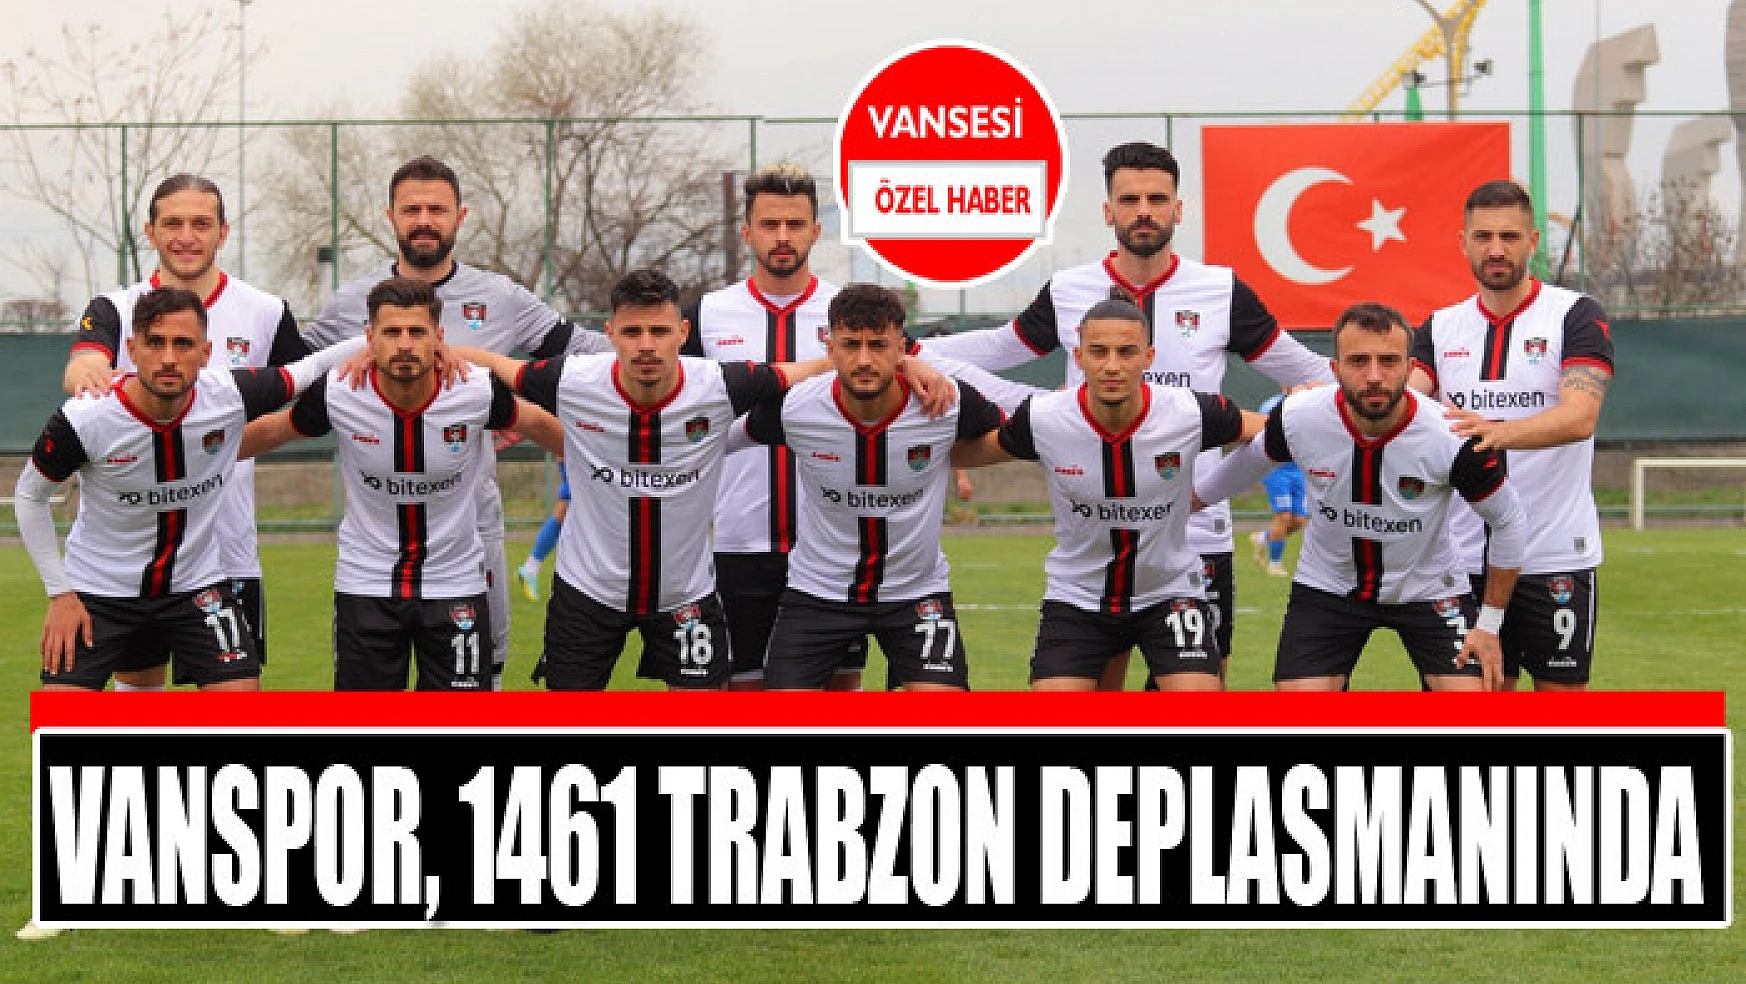 Vanspor, 1461 Trabzon deplasmanında